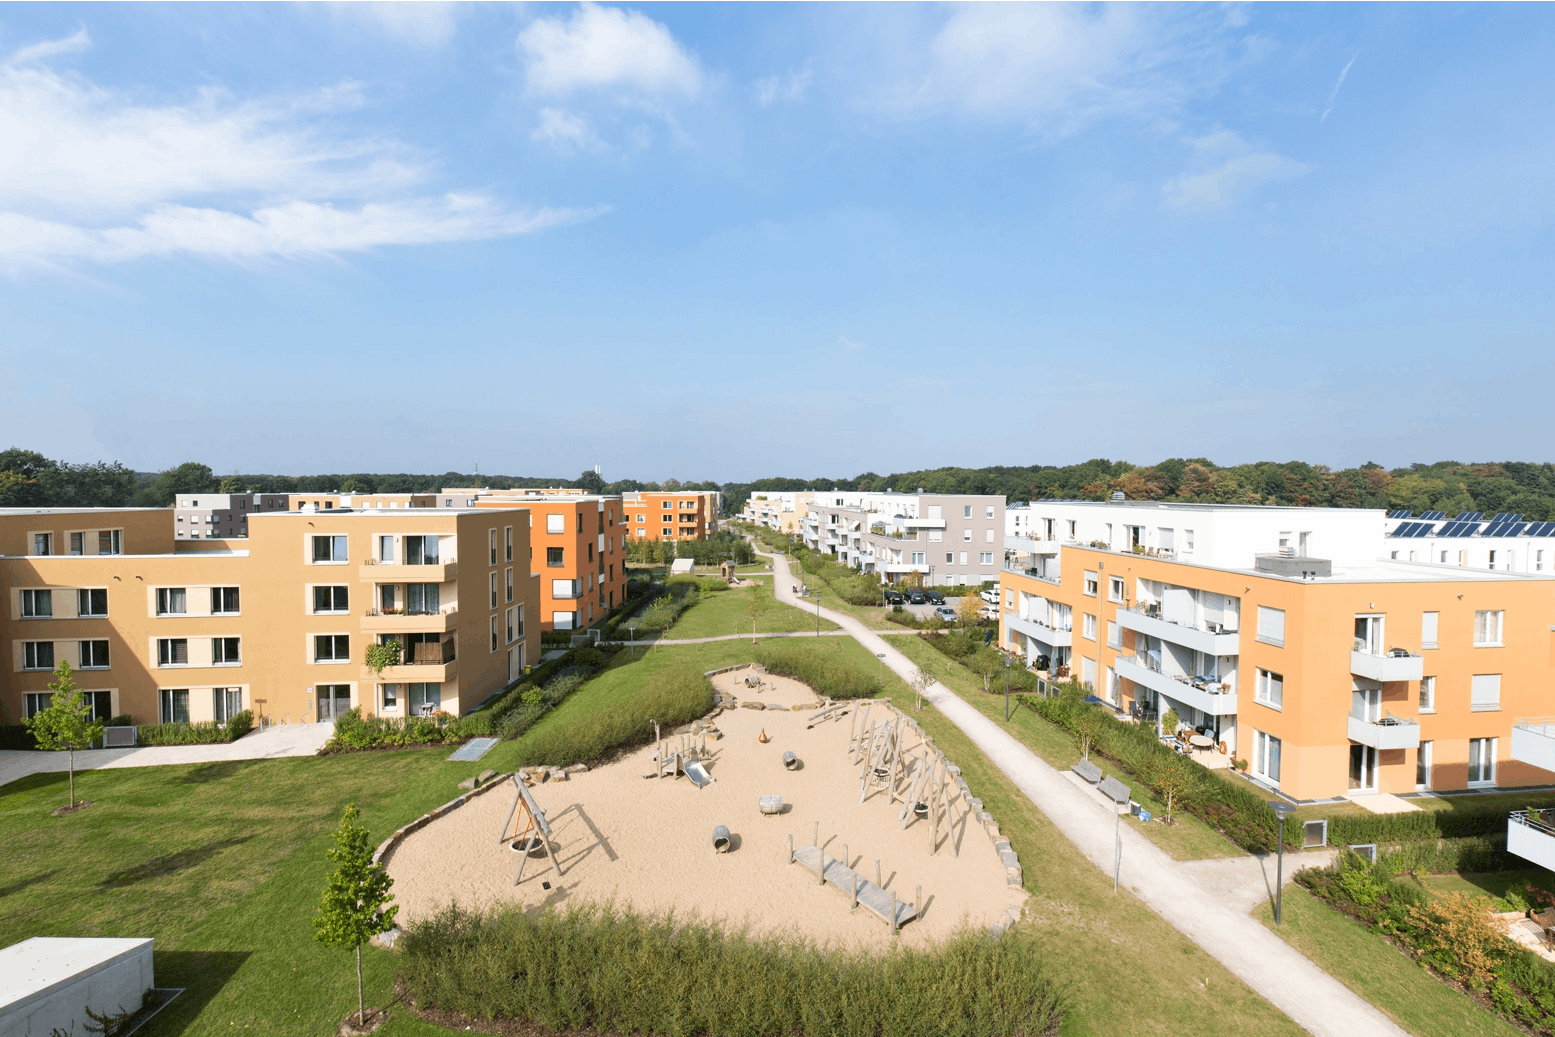 Freianlagen Förder Landschaftsarchitekten, 1. Preis "Viertel vor Grün"